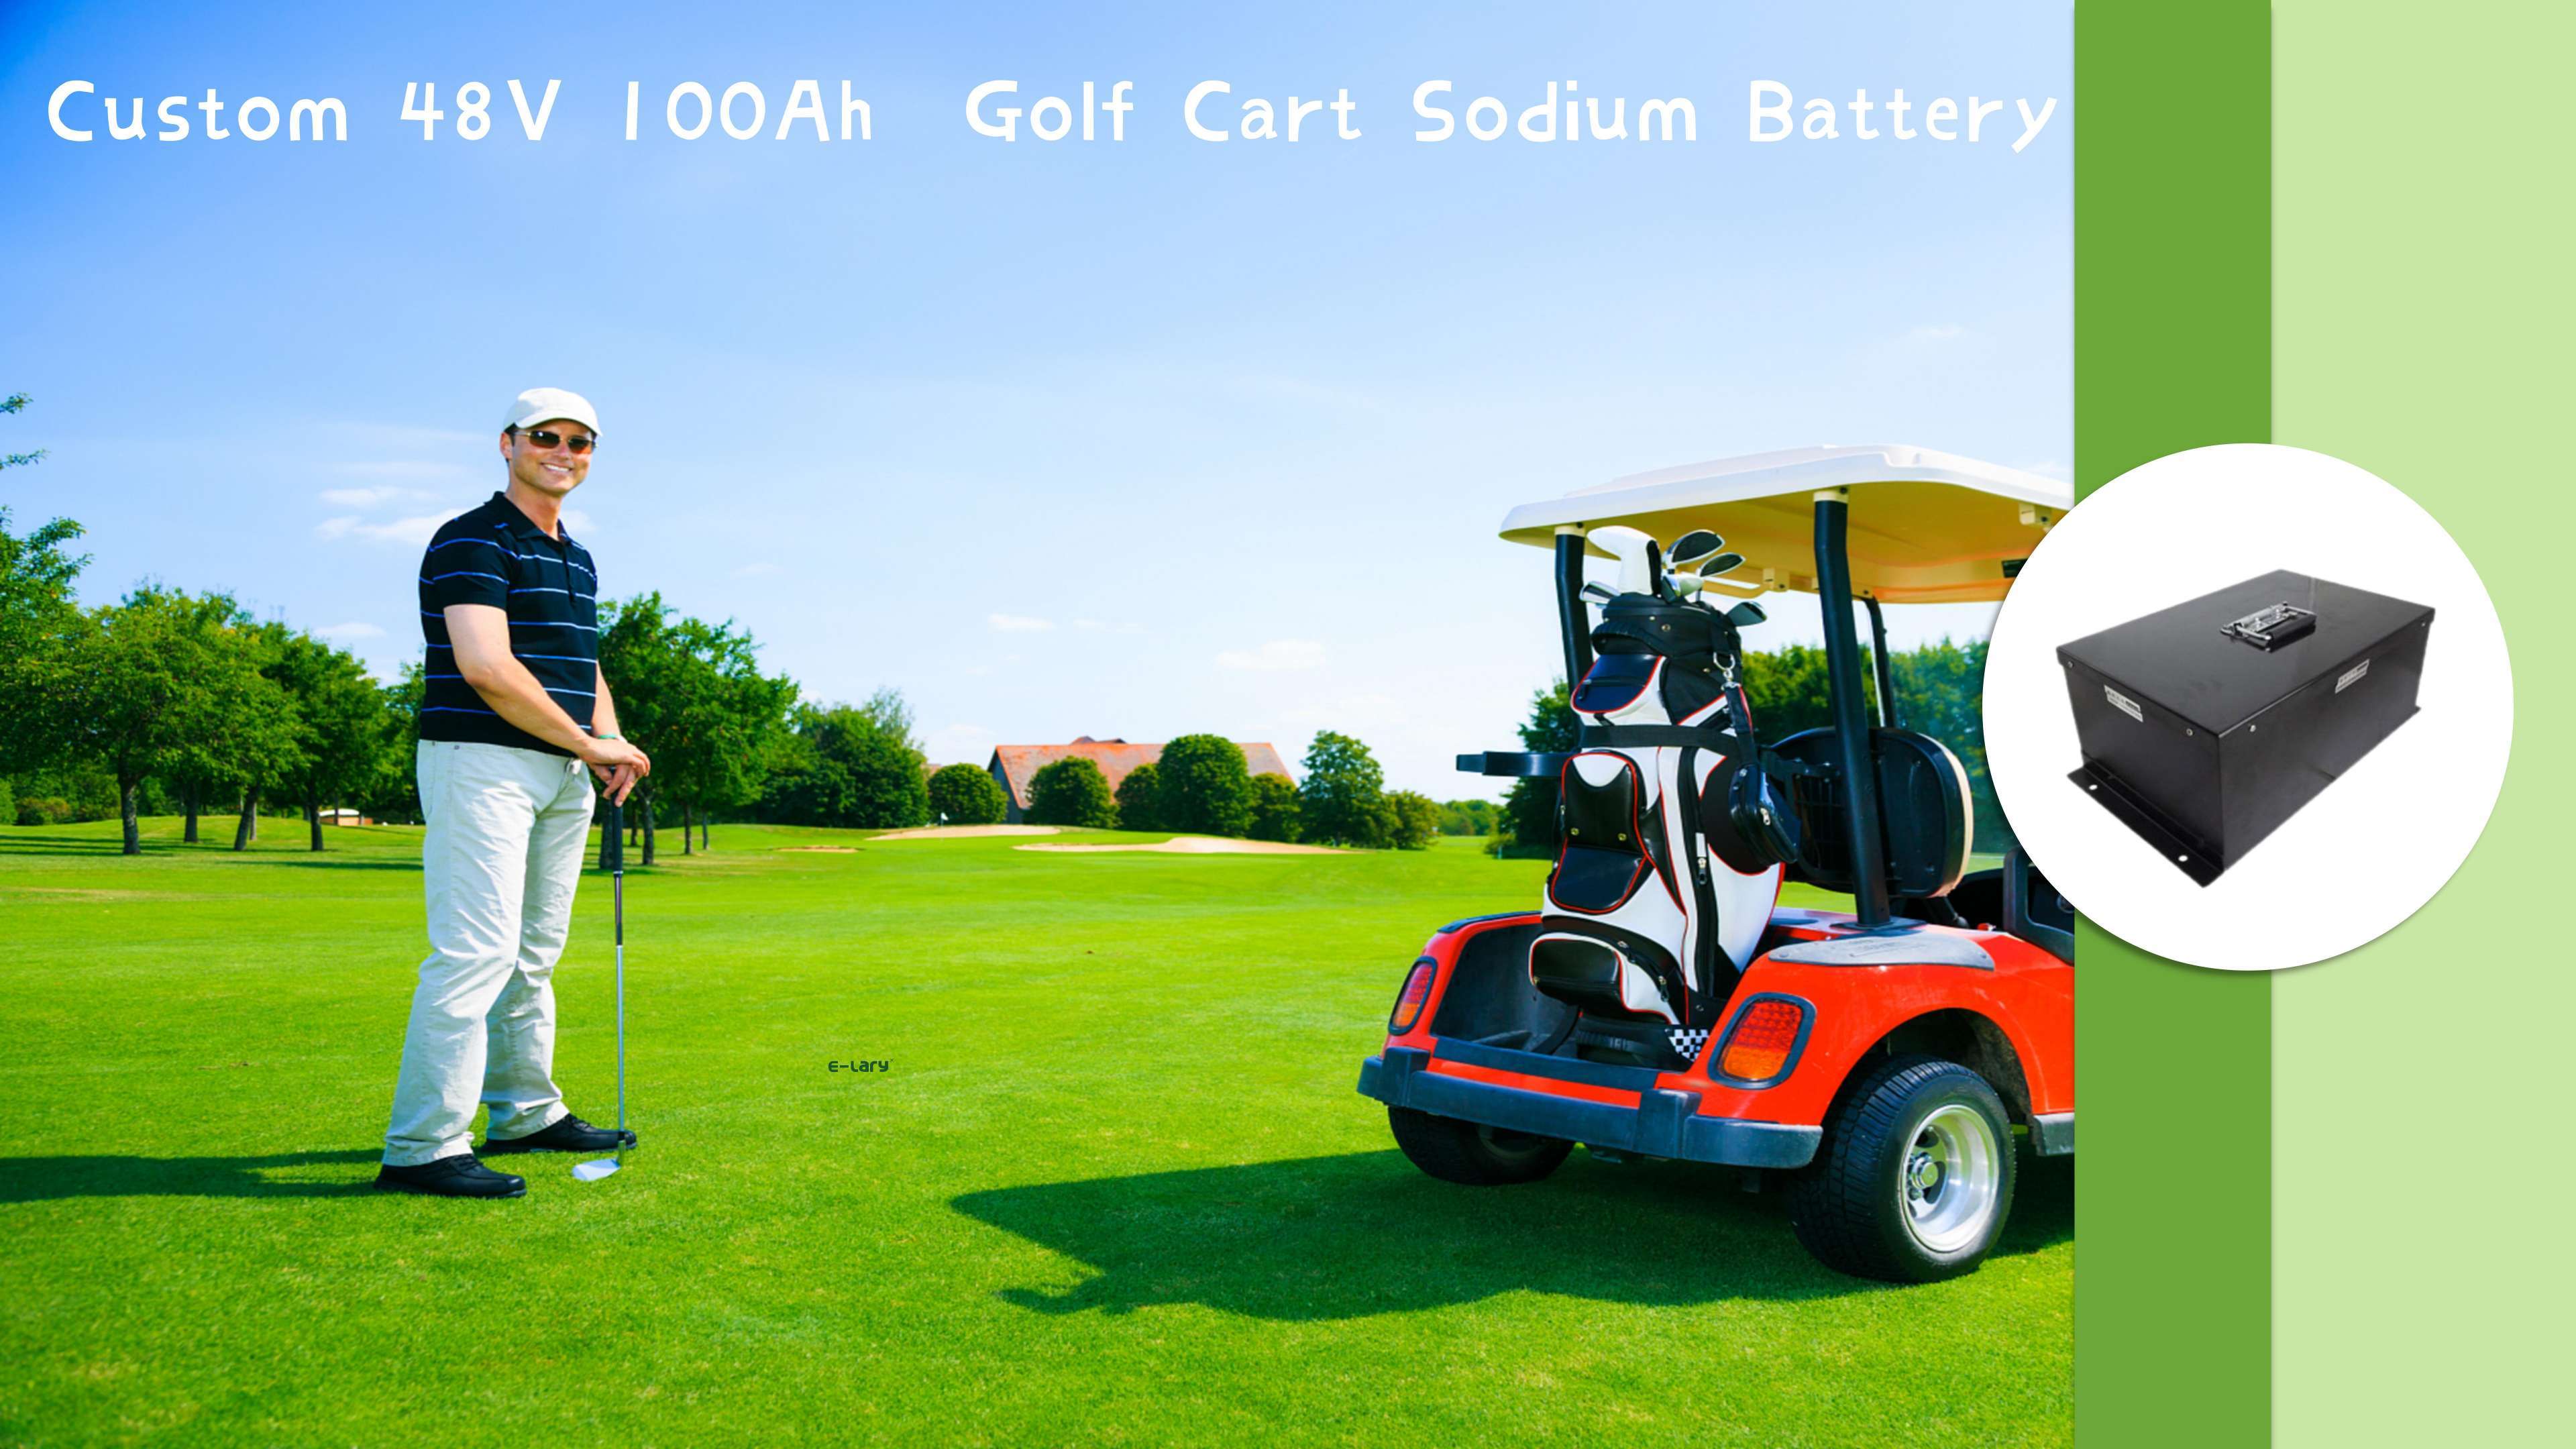 E-lary 48V 100Ah  Golf Cart Lithium Battery